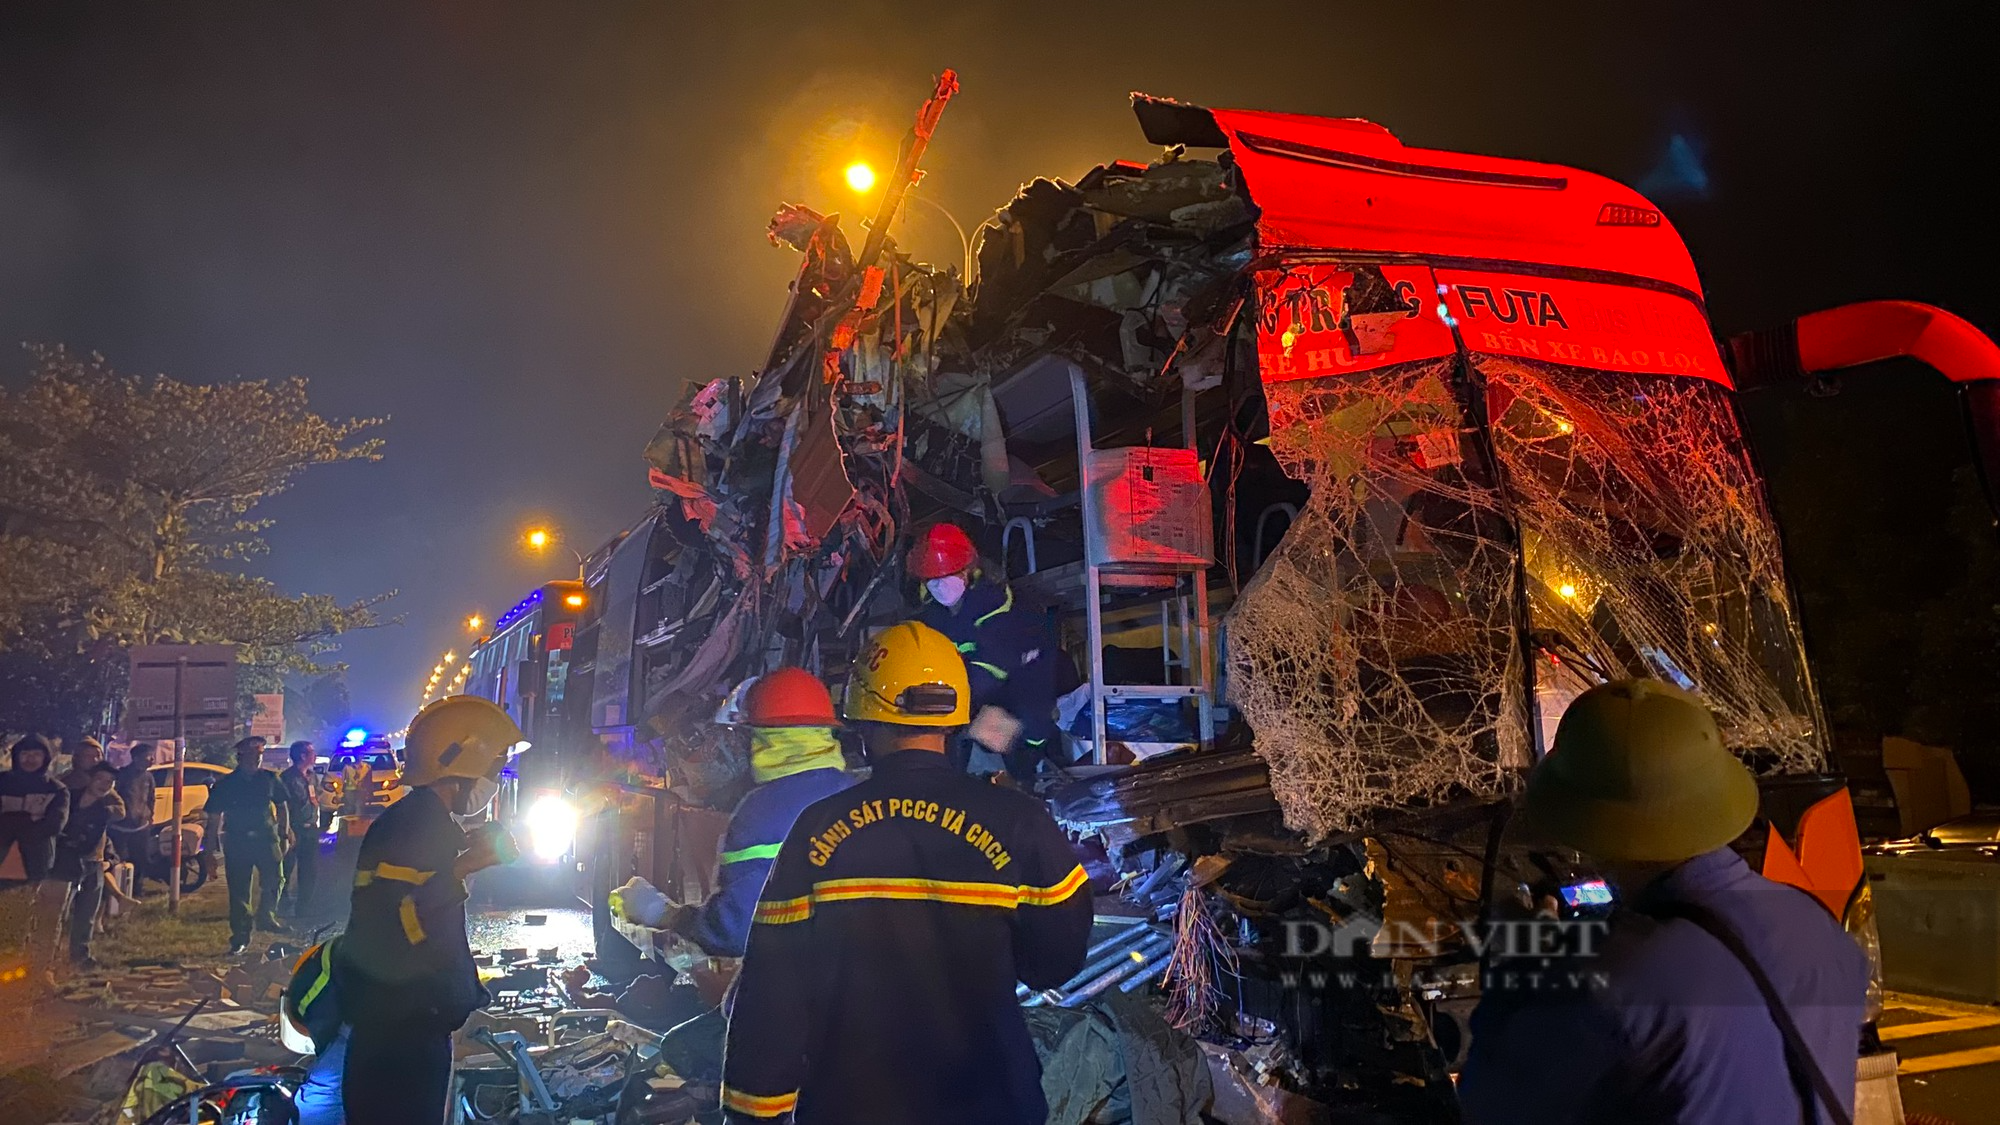 Quảng Nam sẽ “họp khẩn” tìm nguyên nhân sau 2 vụ tai nạn nghiêm trọng làm 13 người tử vong - Ảnh 3.